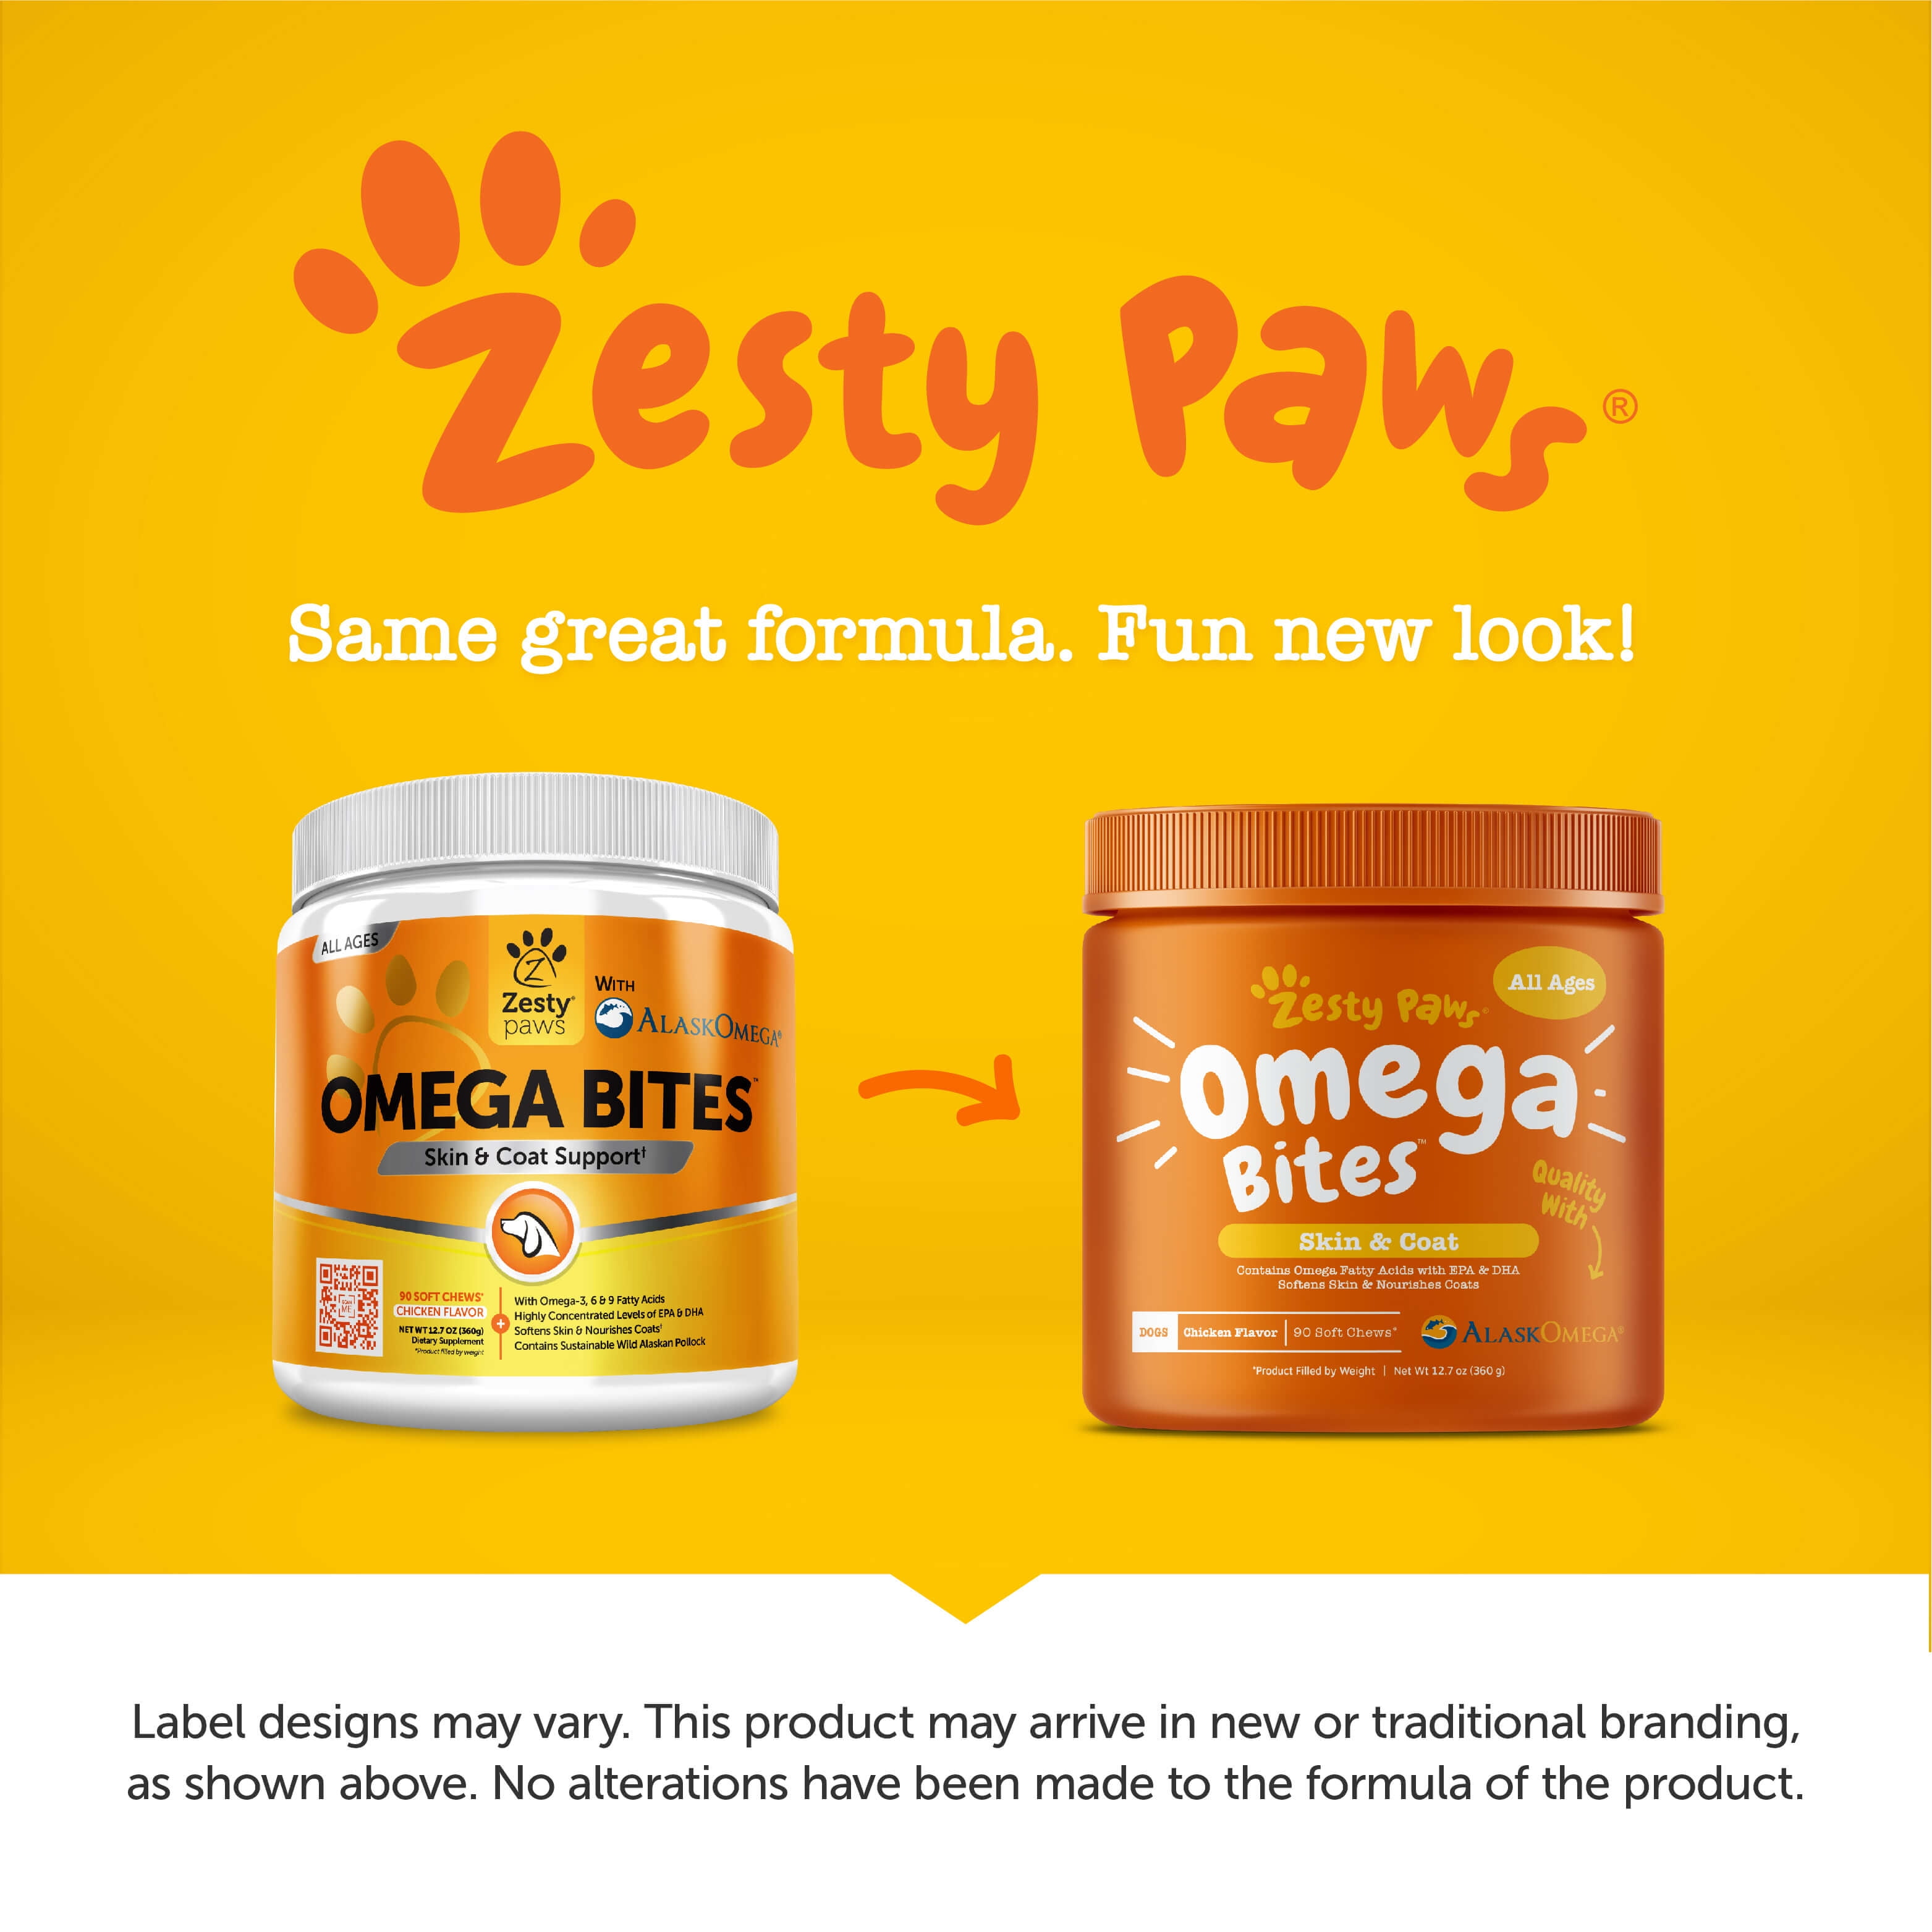 zesty paws omega bites skin & coat